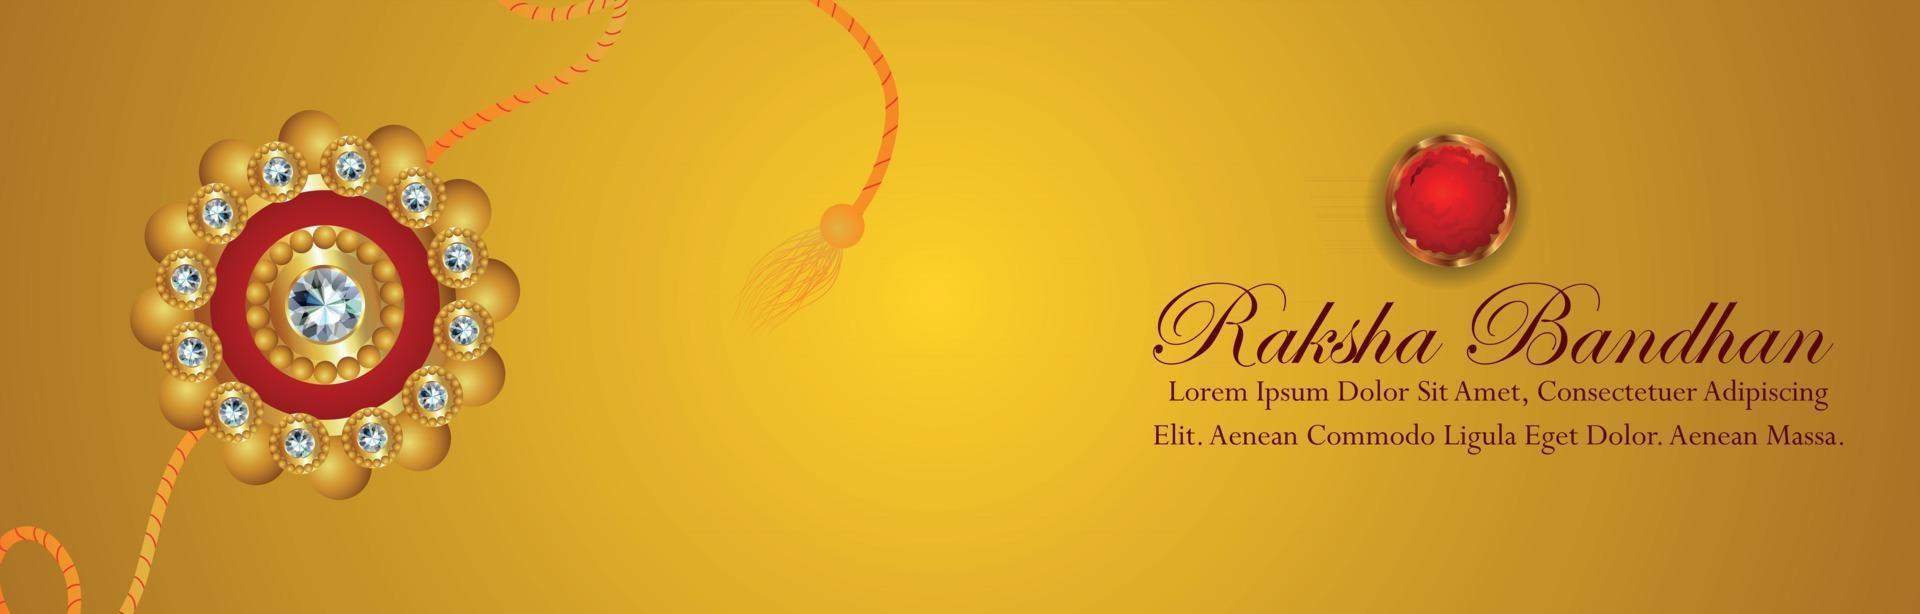 kreative Vektorillustration des glücklichen Raksha Bandhan-Feierbanners mit Kristall-Rakhi und Geschenken vektor